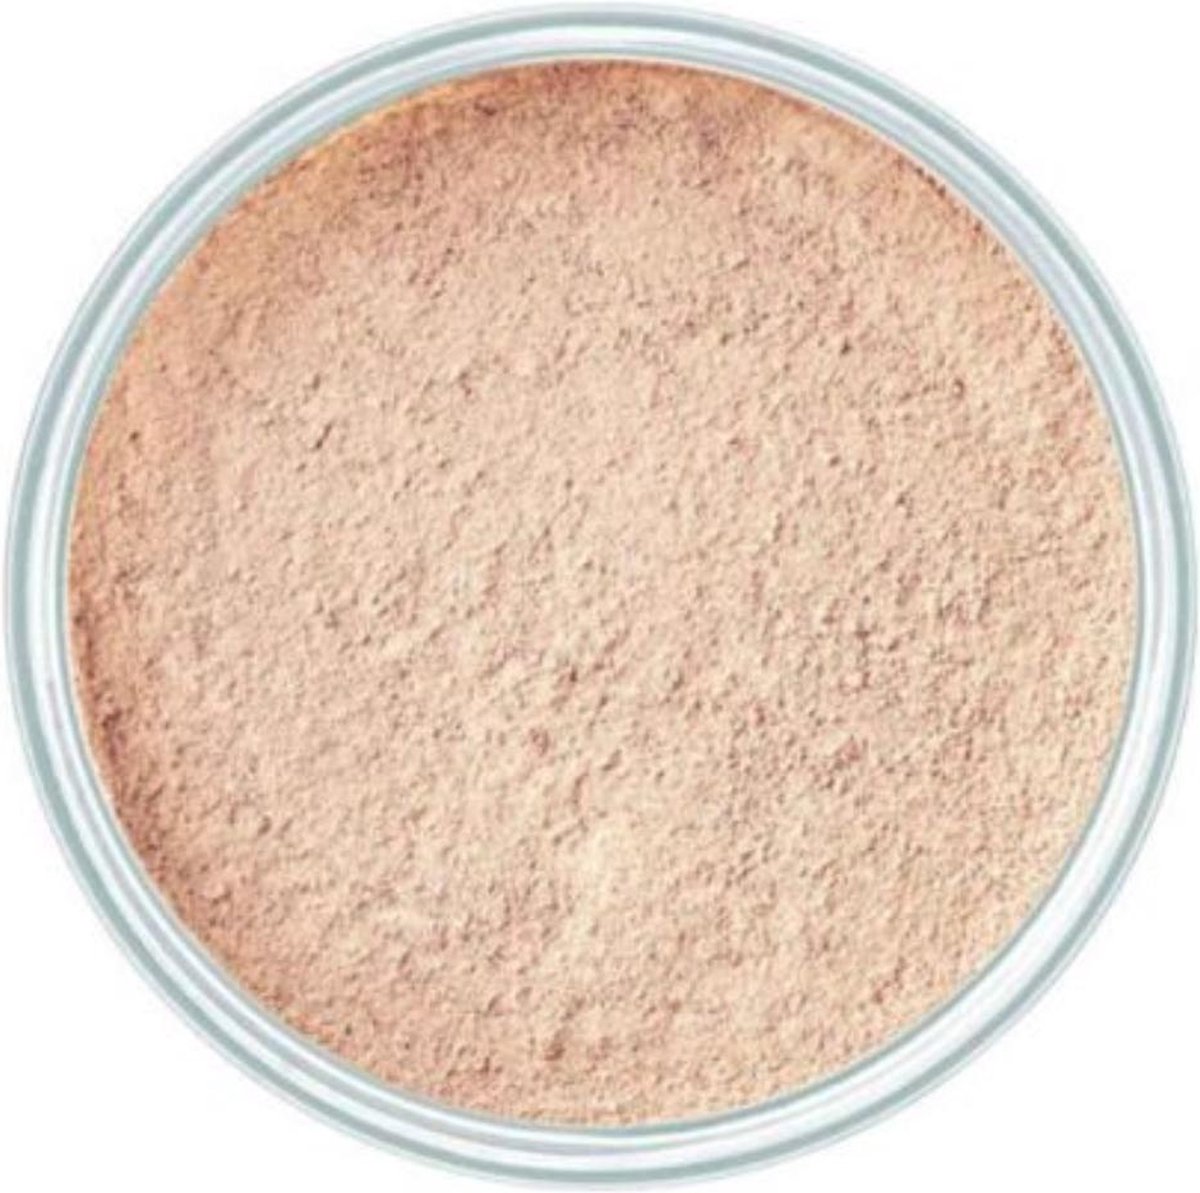 Artdeco Mineral Powder Foundation - 15 g - 3 Soft Ivory-artdeco 1